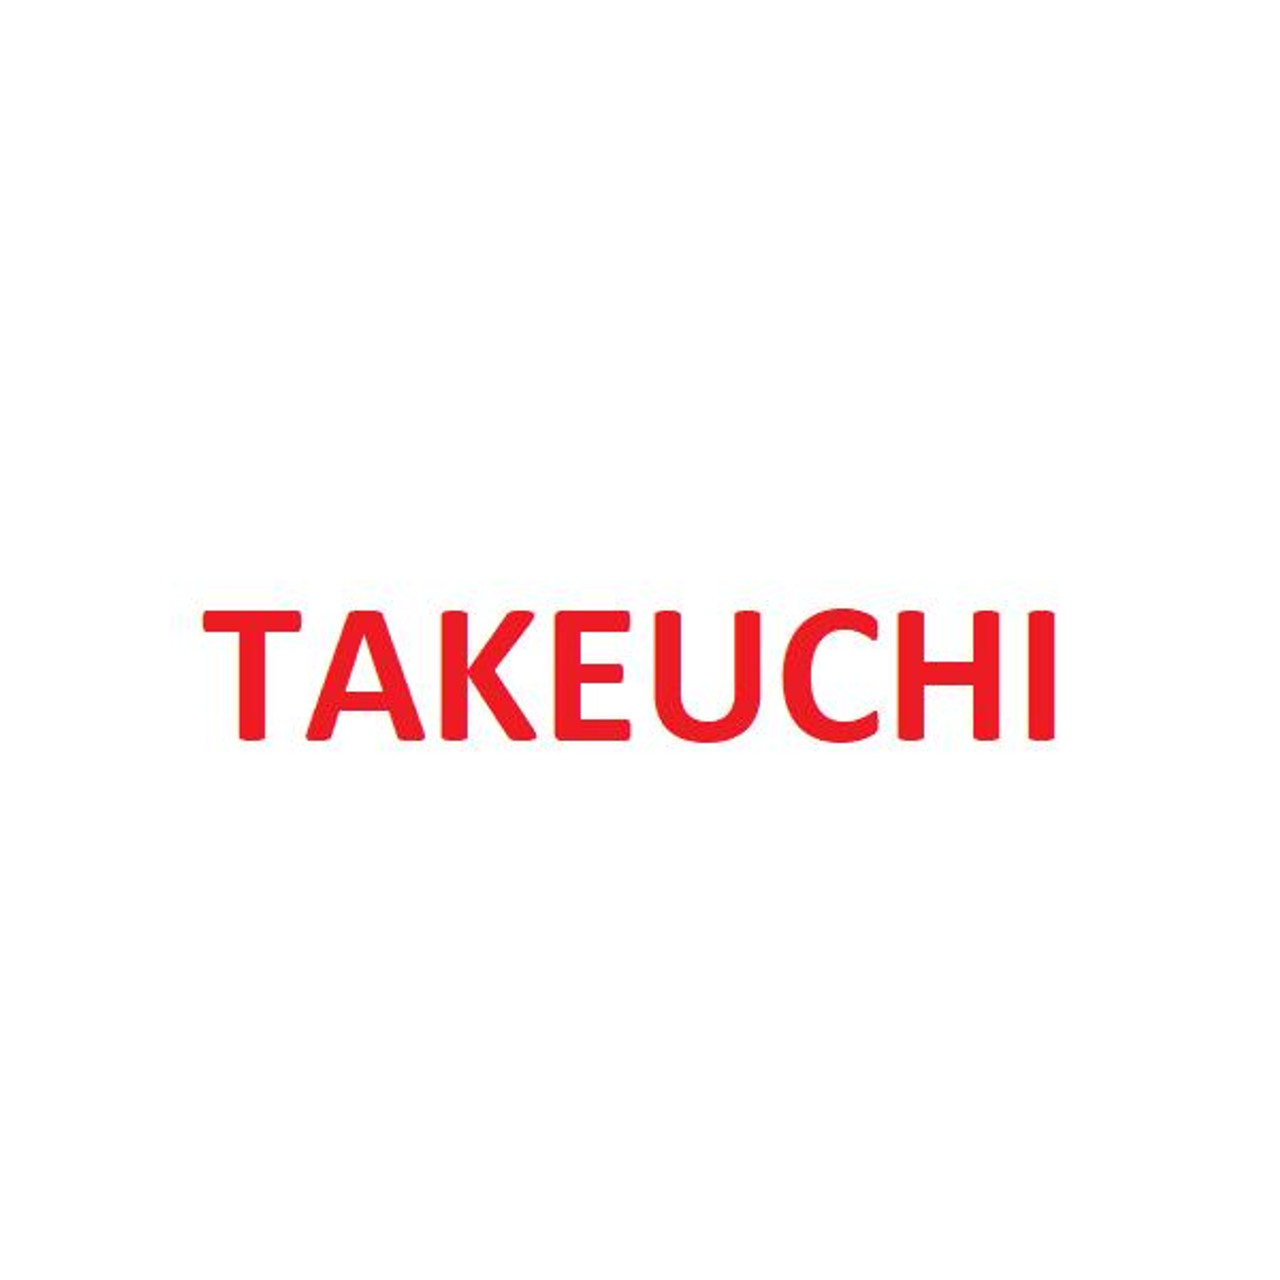 Takeuchi 19000-63499 Excavator Seal Kit 65 x 95mm